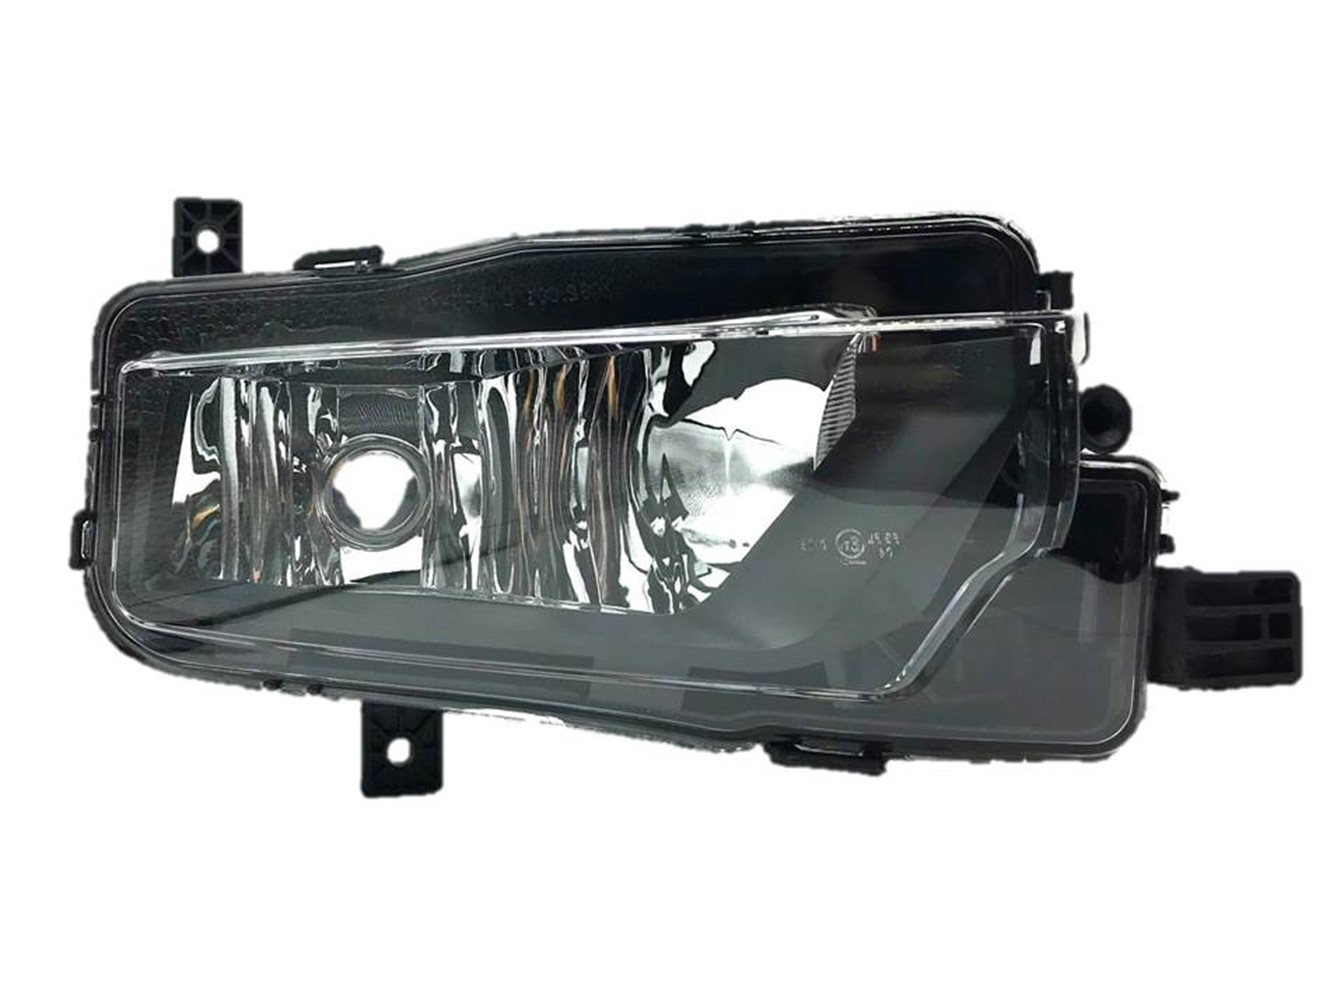 Nachrüstset Nebelscheinwerfer VW Caddy 4 Typ - komplett inkl Kabelsatz,  Lichtschalter und Blenden